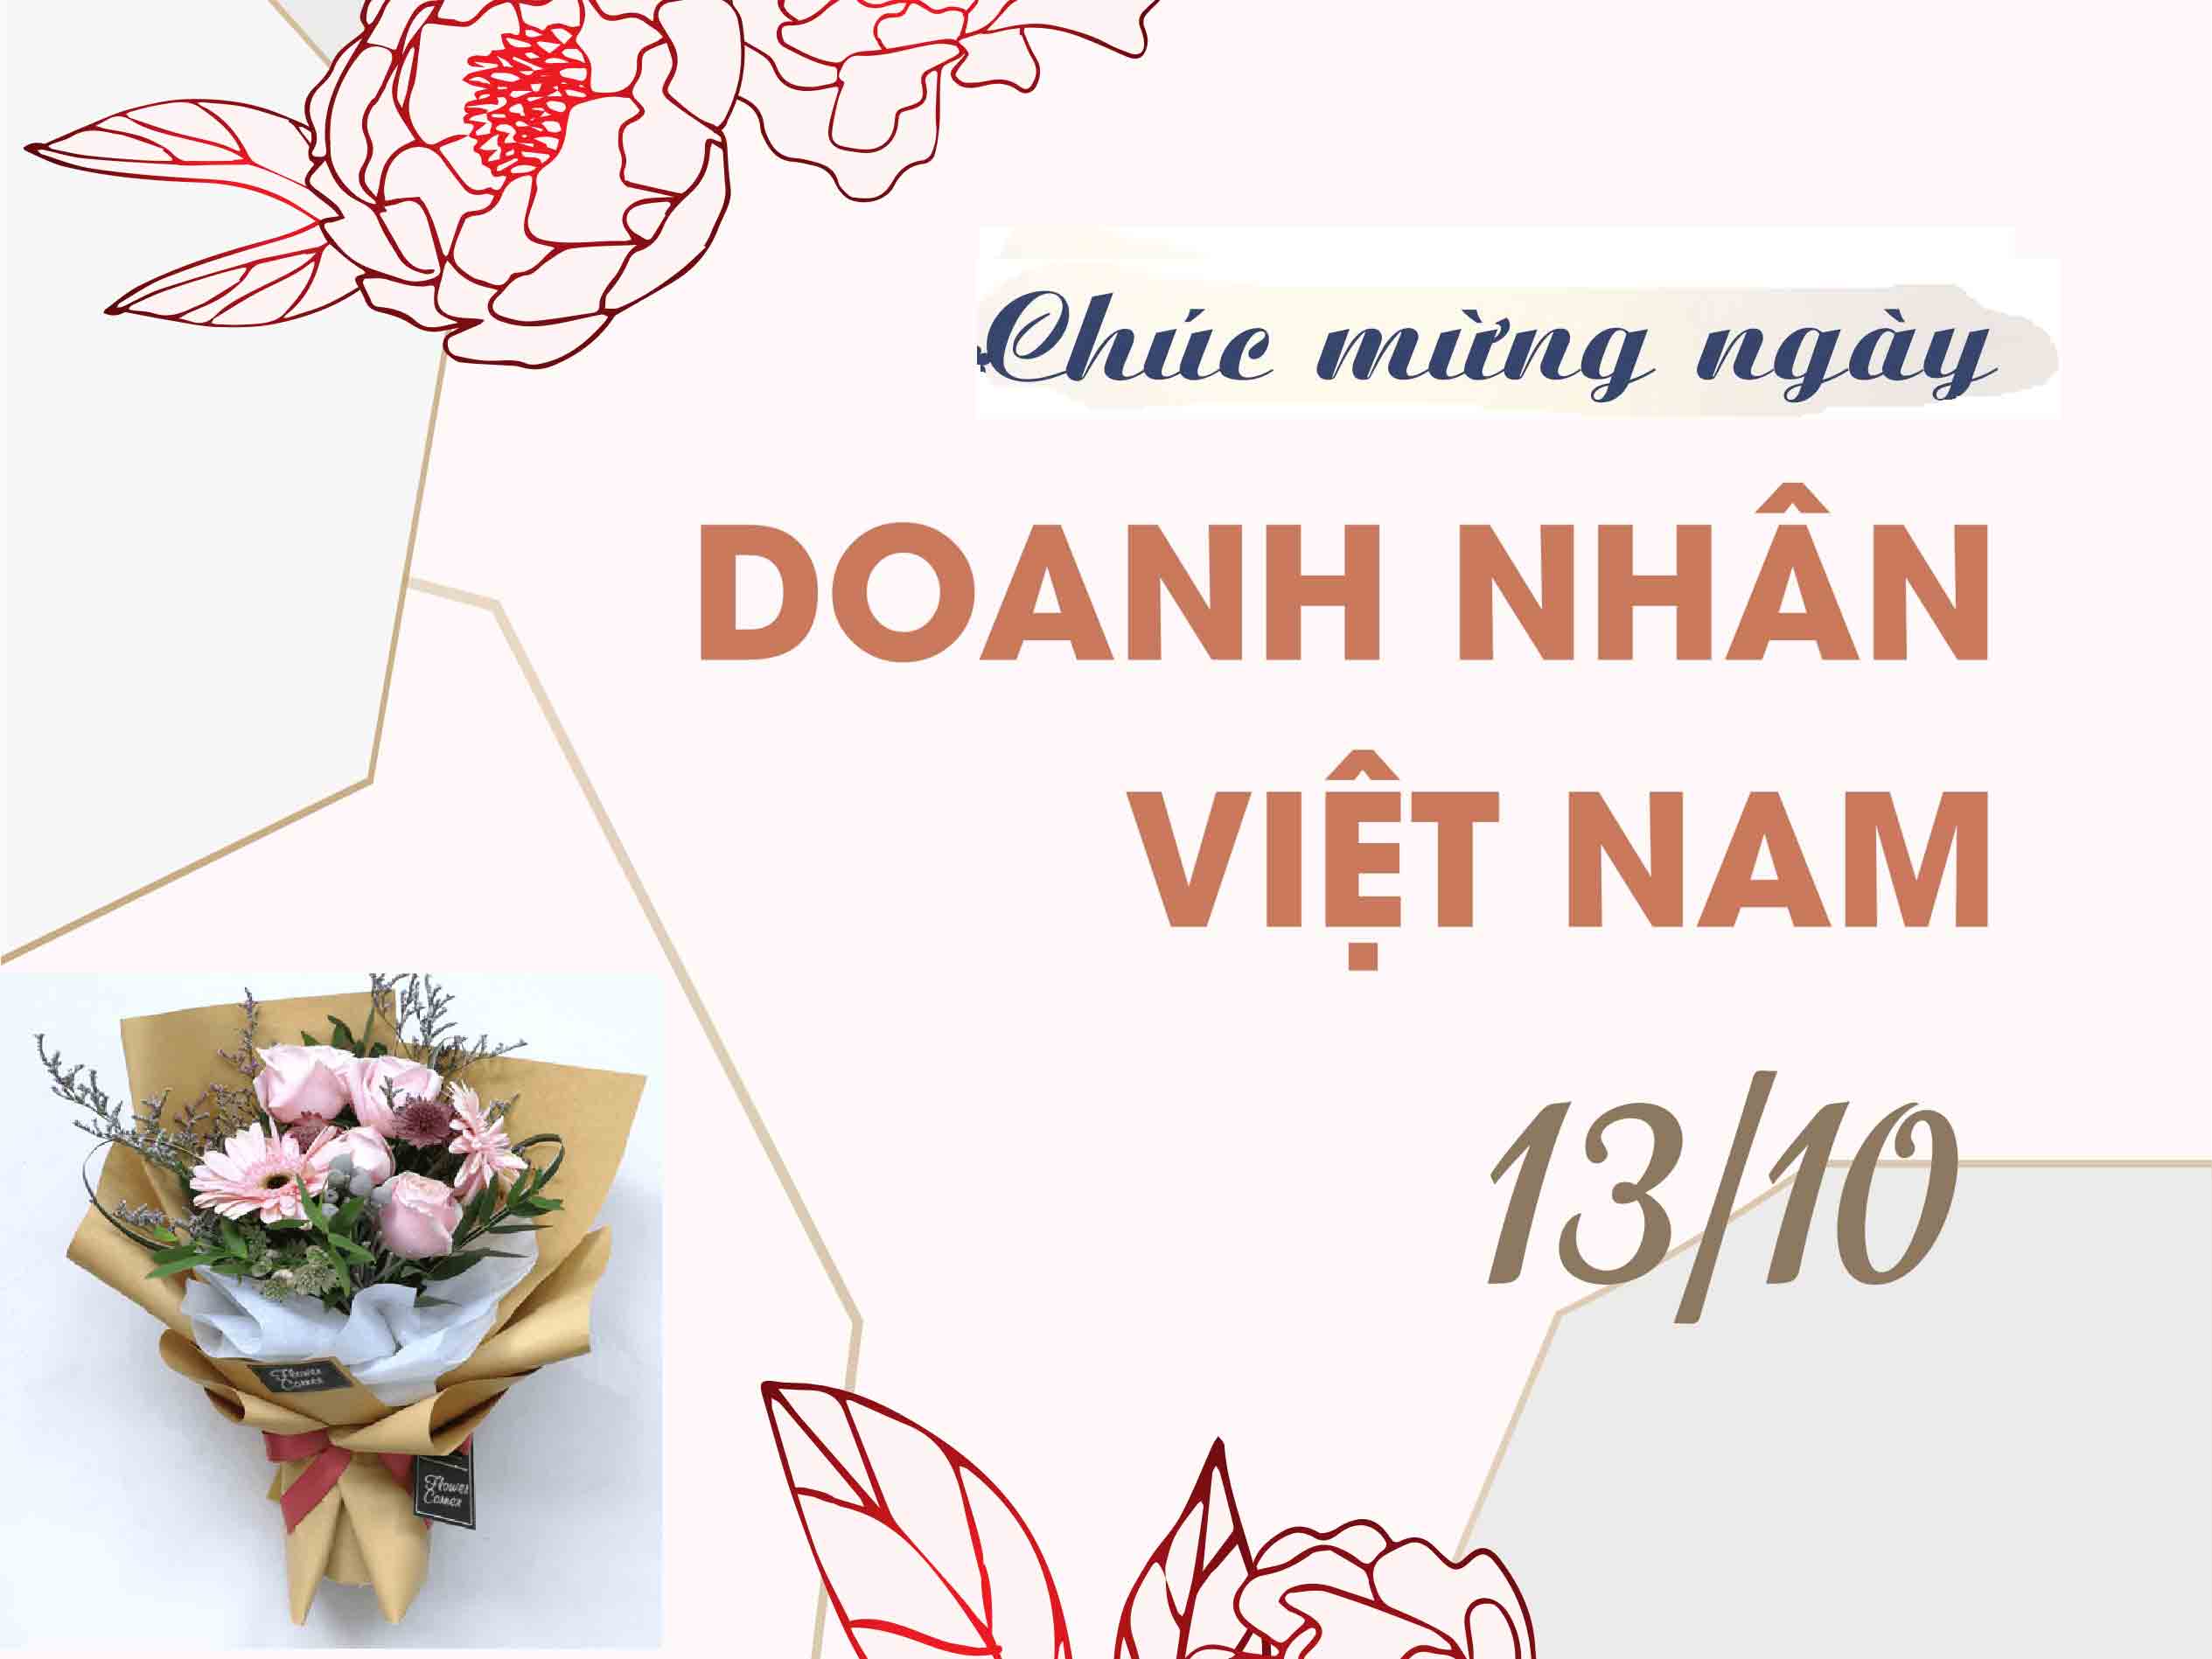 Những lời chúc ngày Doanh nhân Việt Nam hay, ý nghĩa